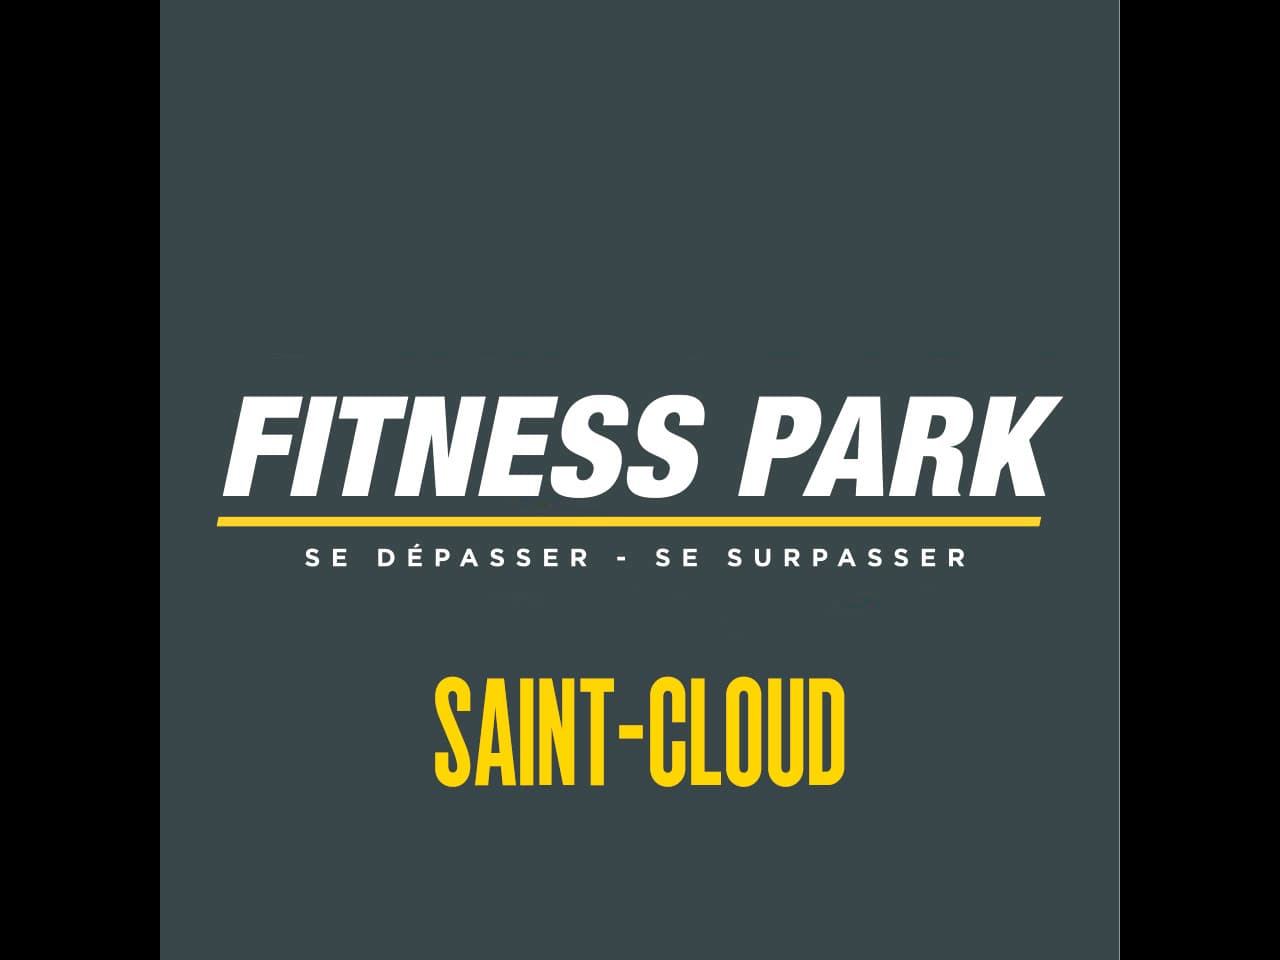 Fitness Park Saint Cloud